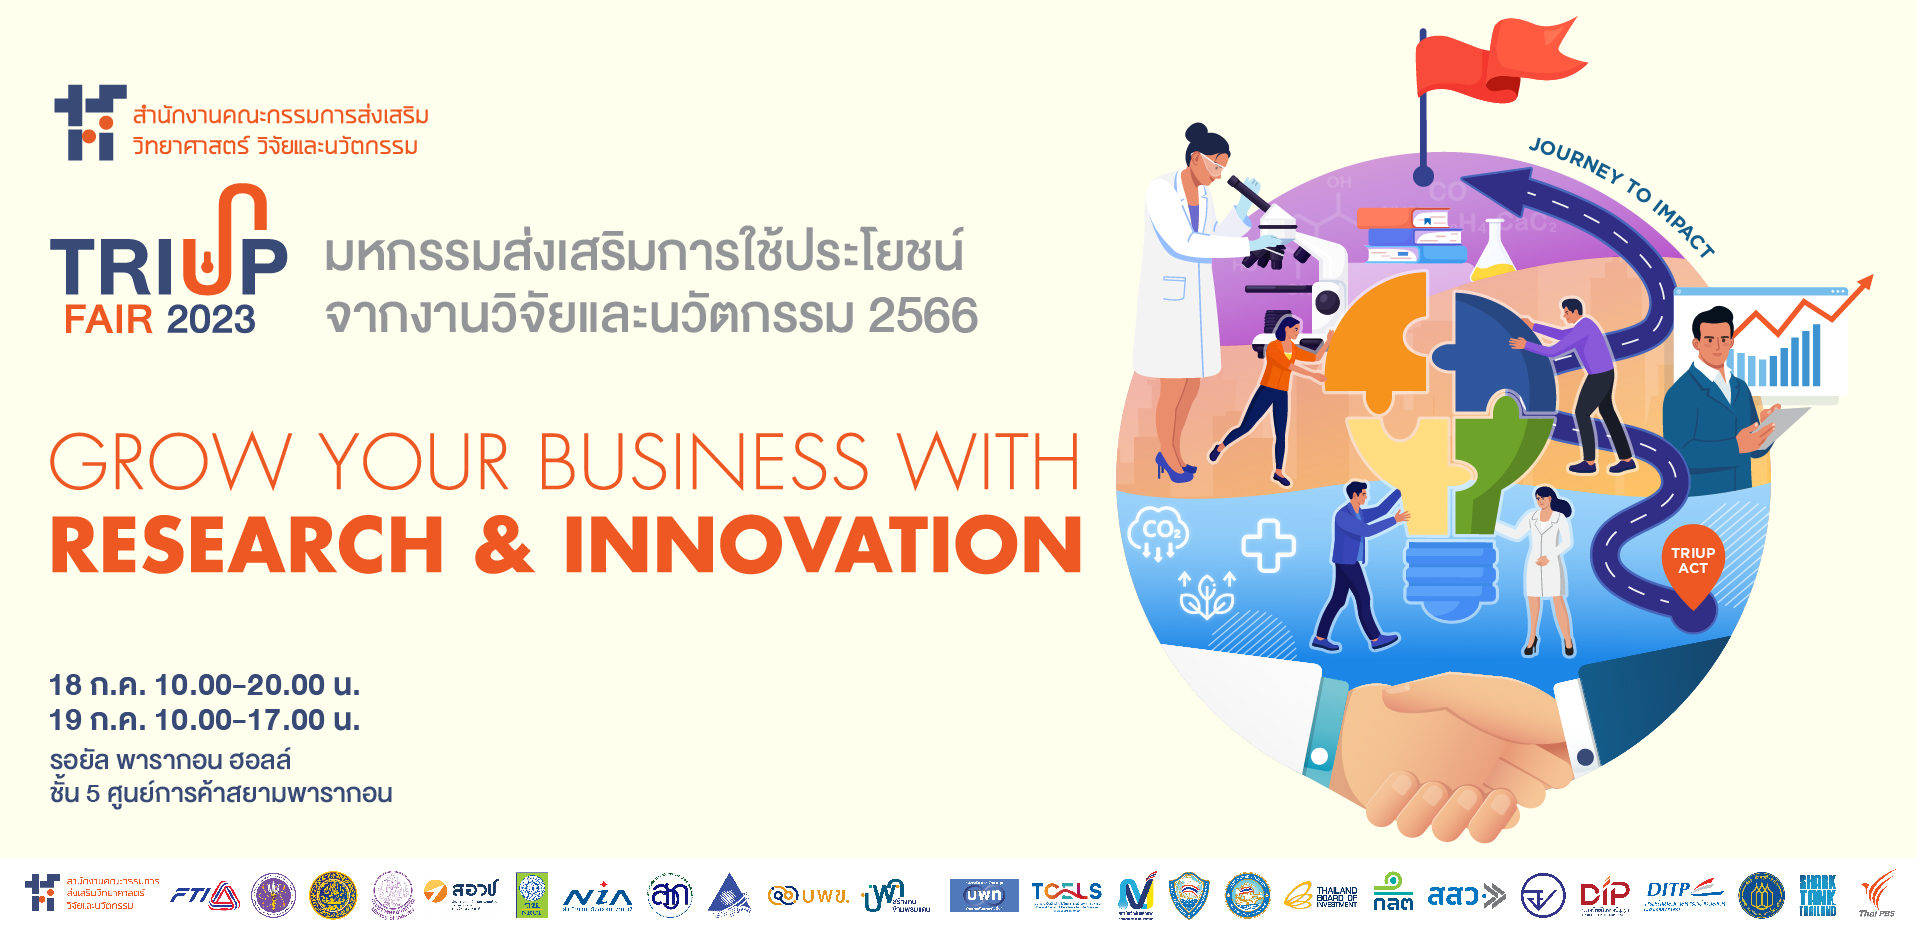 TRIUP FAIR 2023 เร่งธุรกิจให้เติบโตด้วยวิจัยและนวัตกรรม